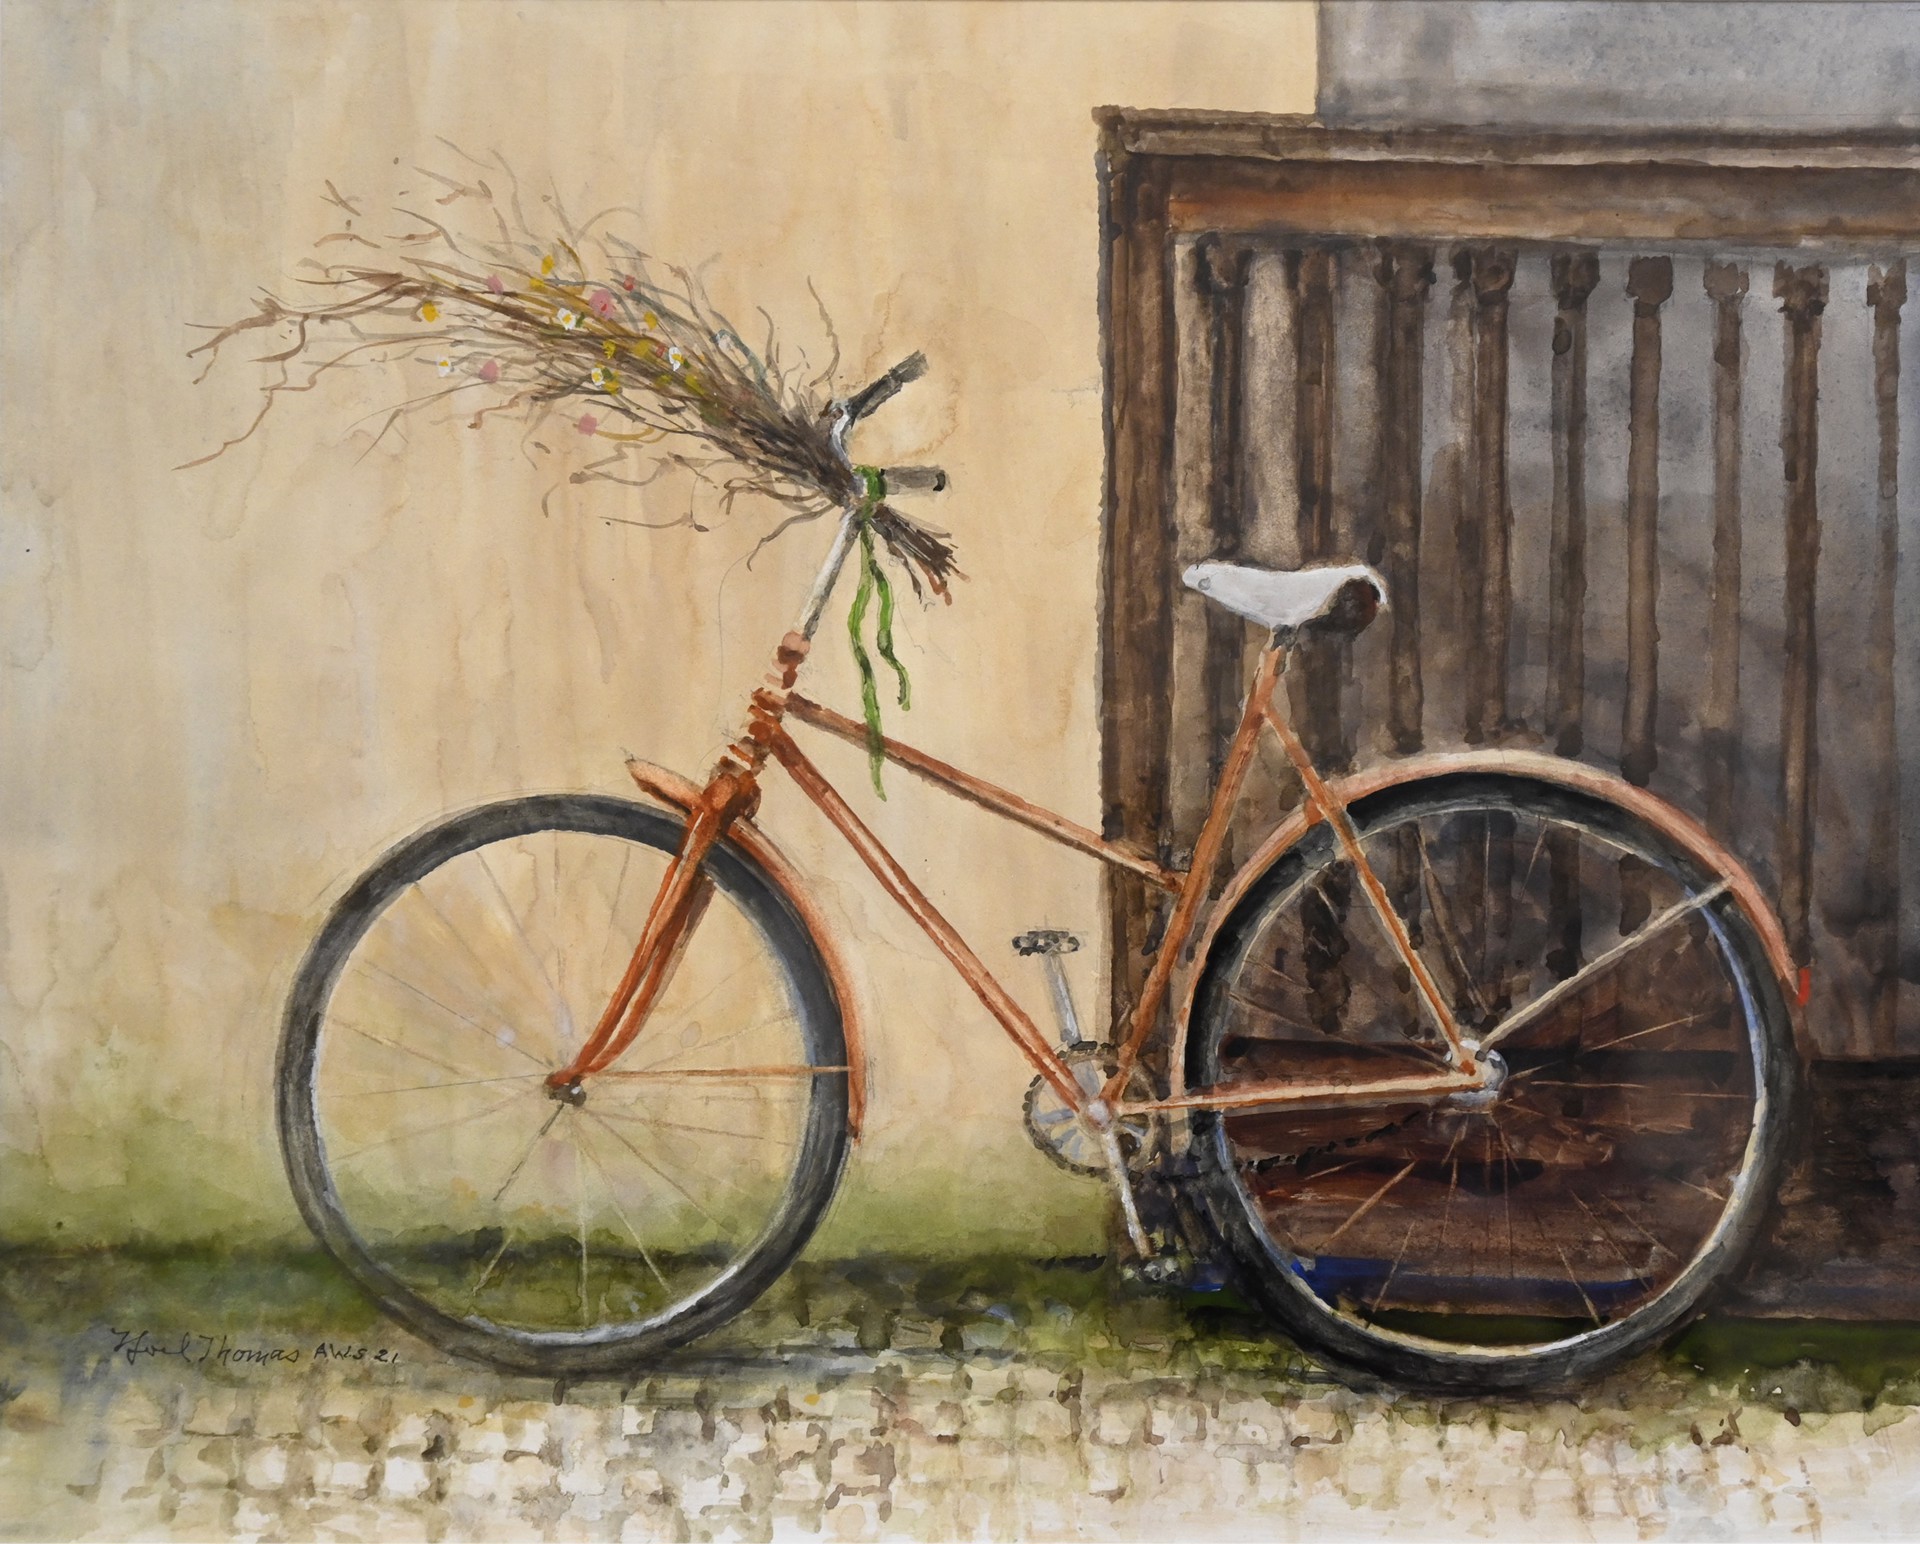 Her Bicycle by Noel Thomas